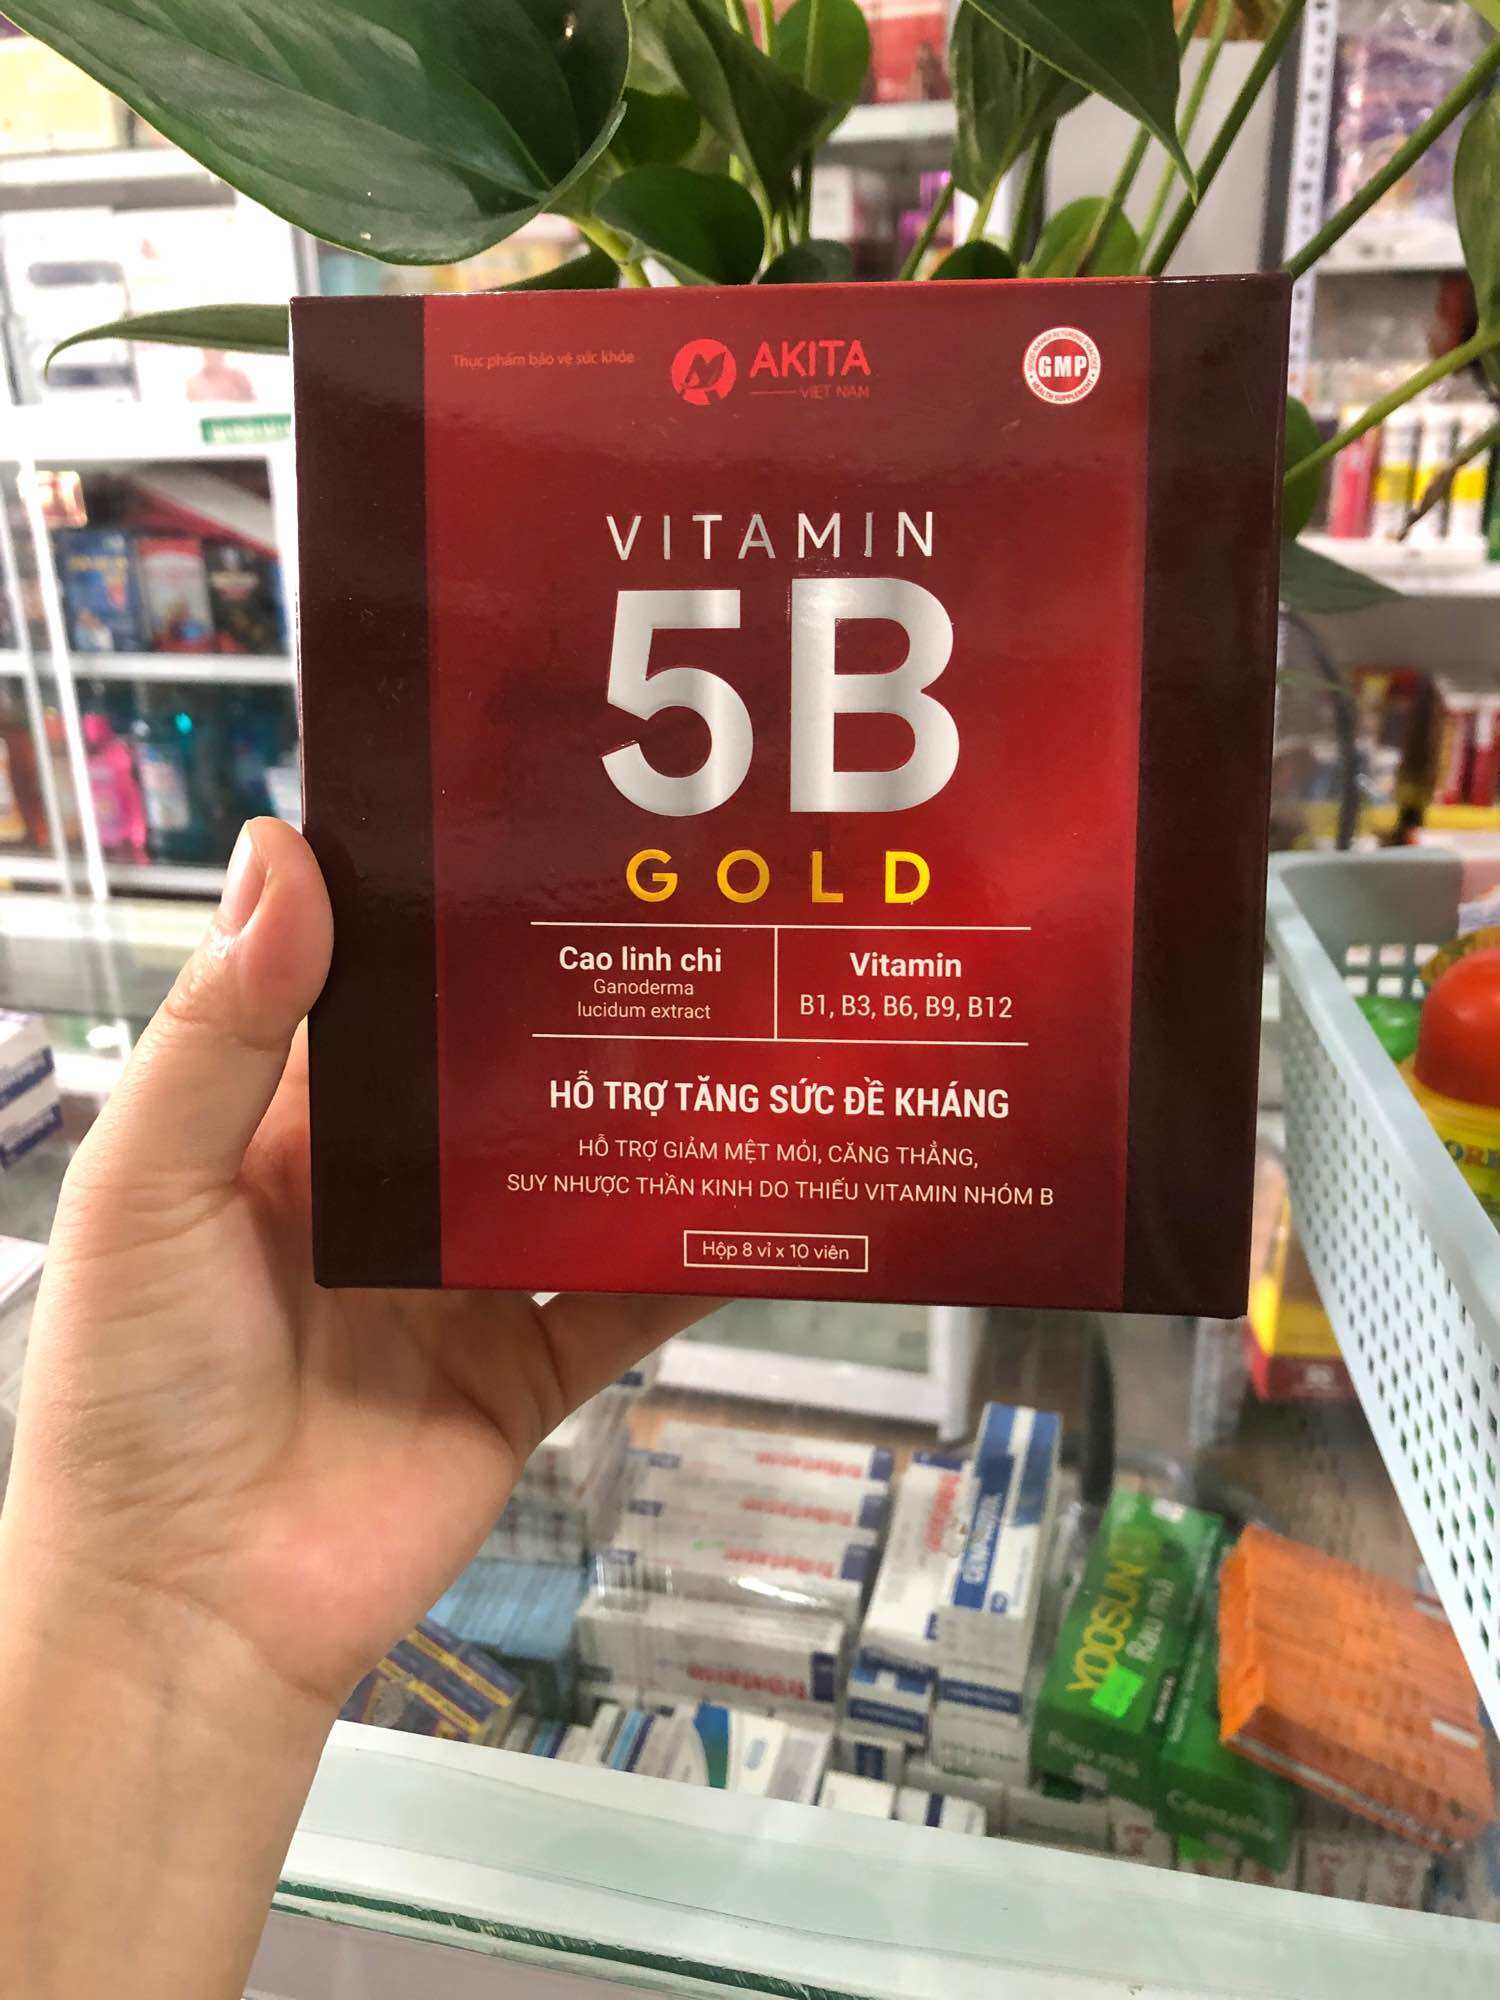 Vitamin 5B bổ sung vitamin nhóm B,giảm tê bì chân tay